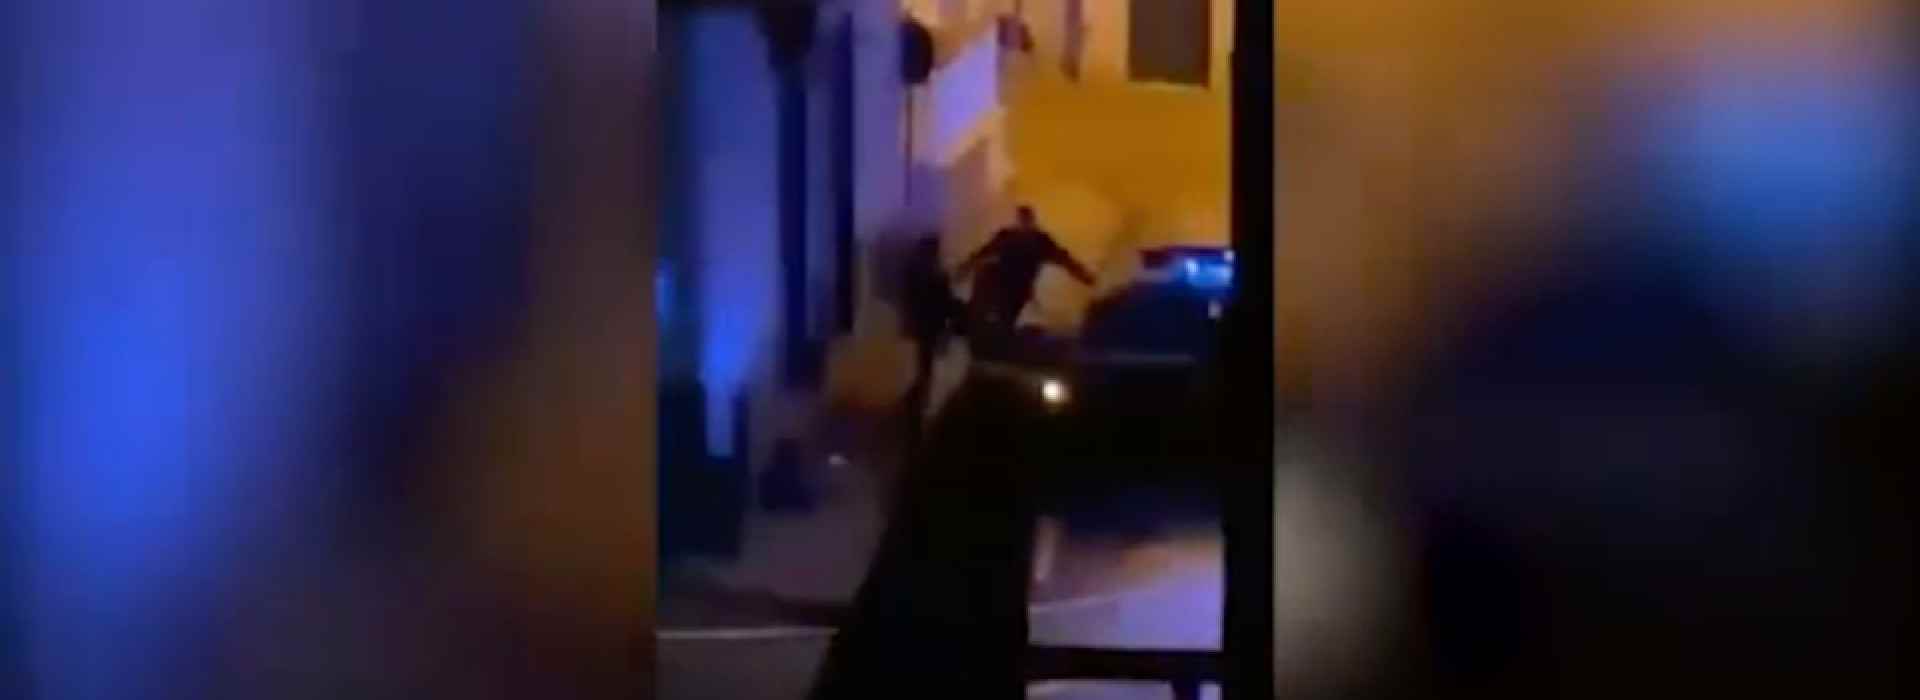 Napoli, carabiniere prende a calci un ragazzo dopo il coprifuoco